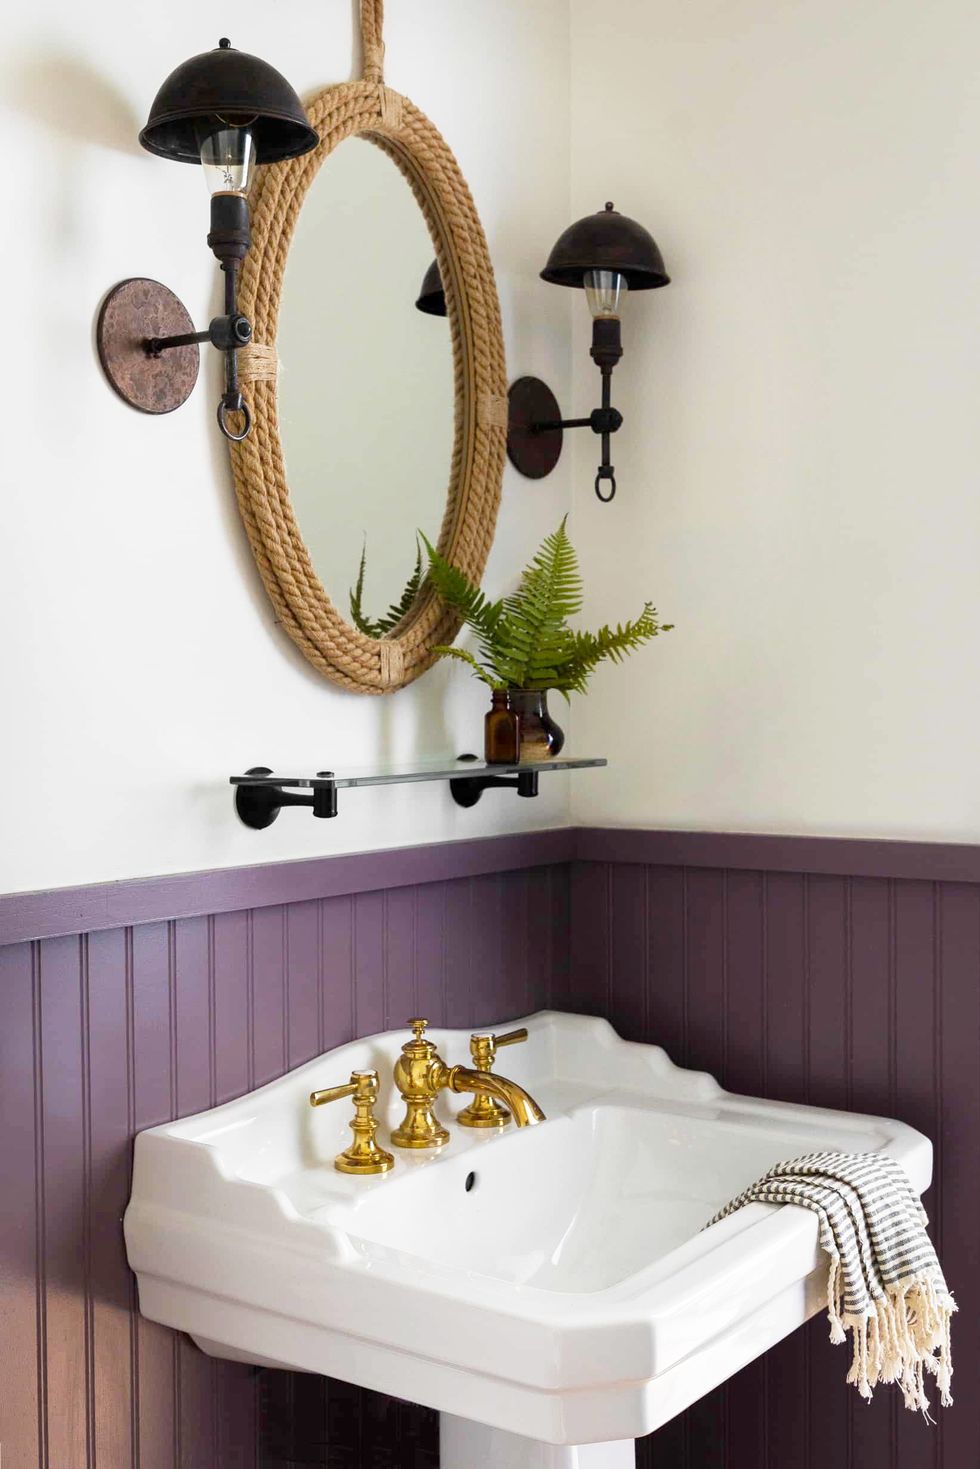 Hình ảnh phòng tắm nhỏ với tường phía dưới sơn màu tím nhạt, phía trên là màu trắng, khung gương dây thừng bắt mắt